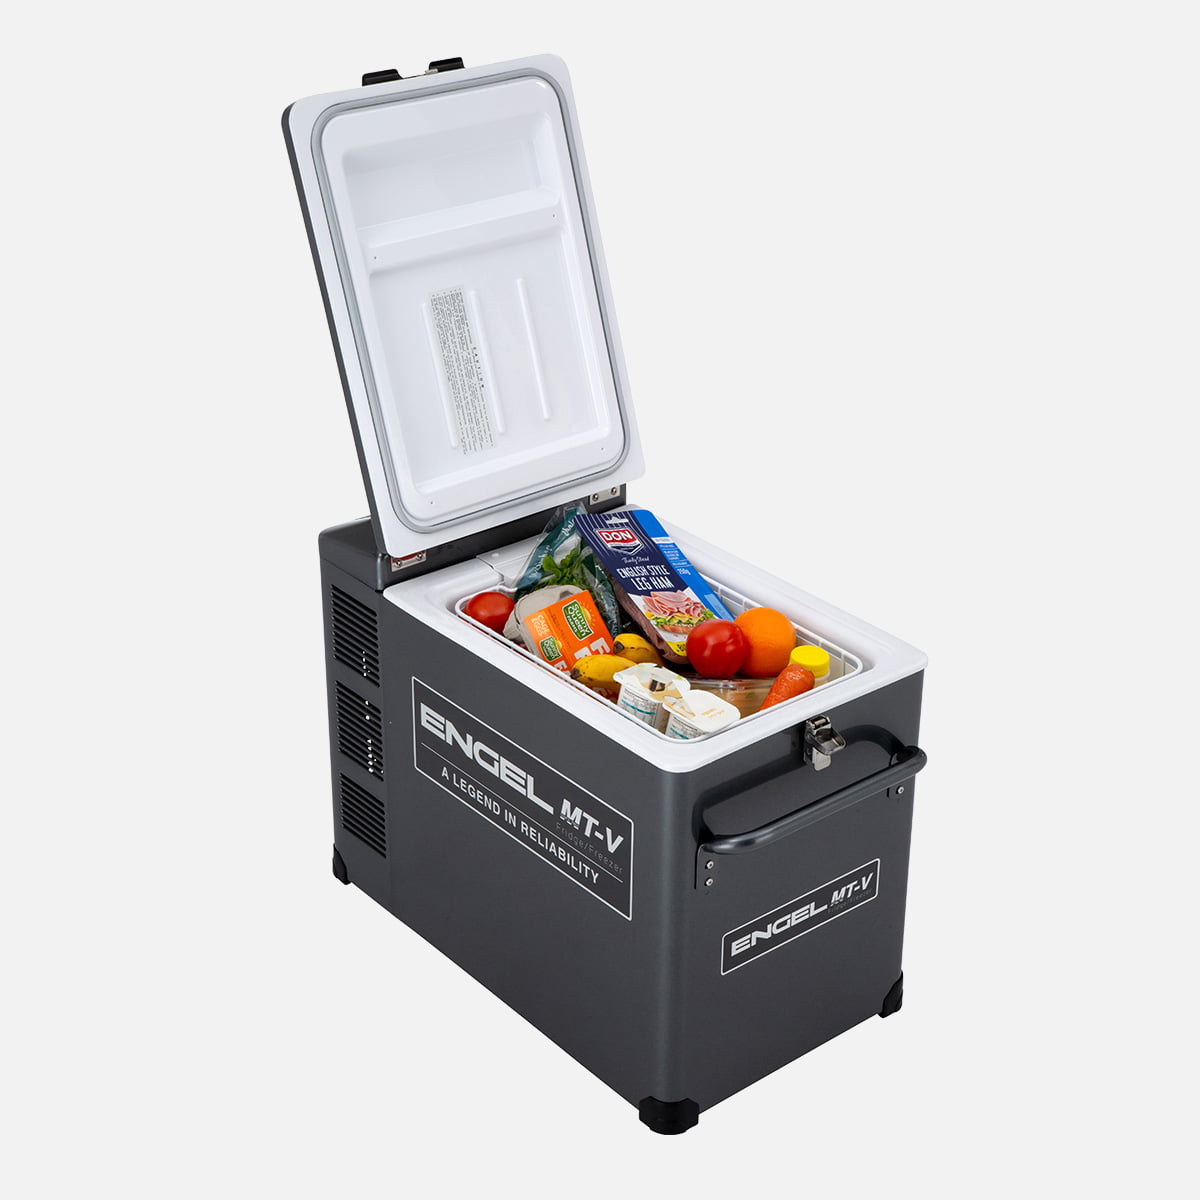 Engel MT-V Portable Fridge Freezer 40 Litre MT45F-G4D-V Open with food inside.